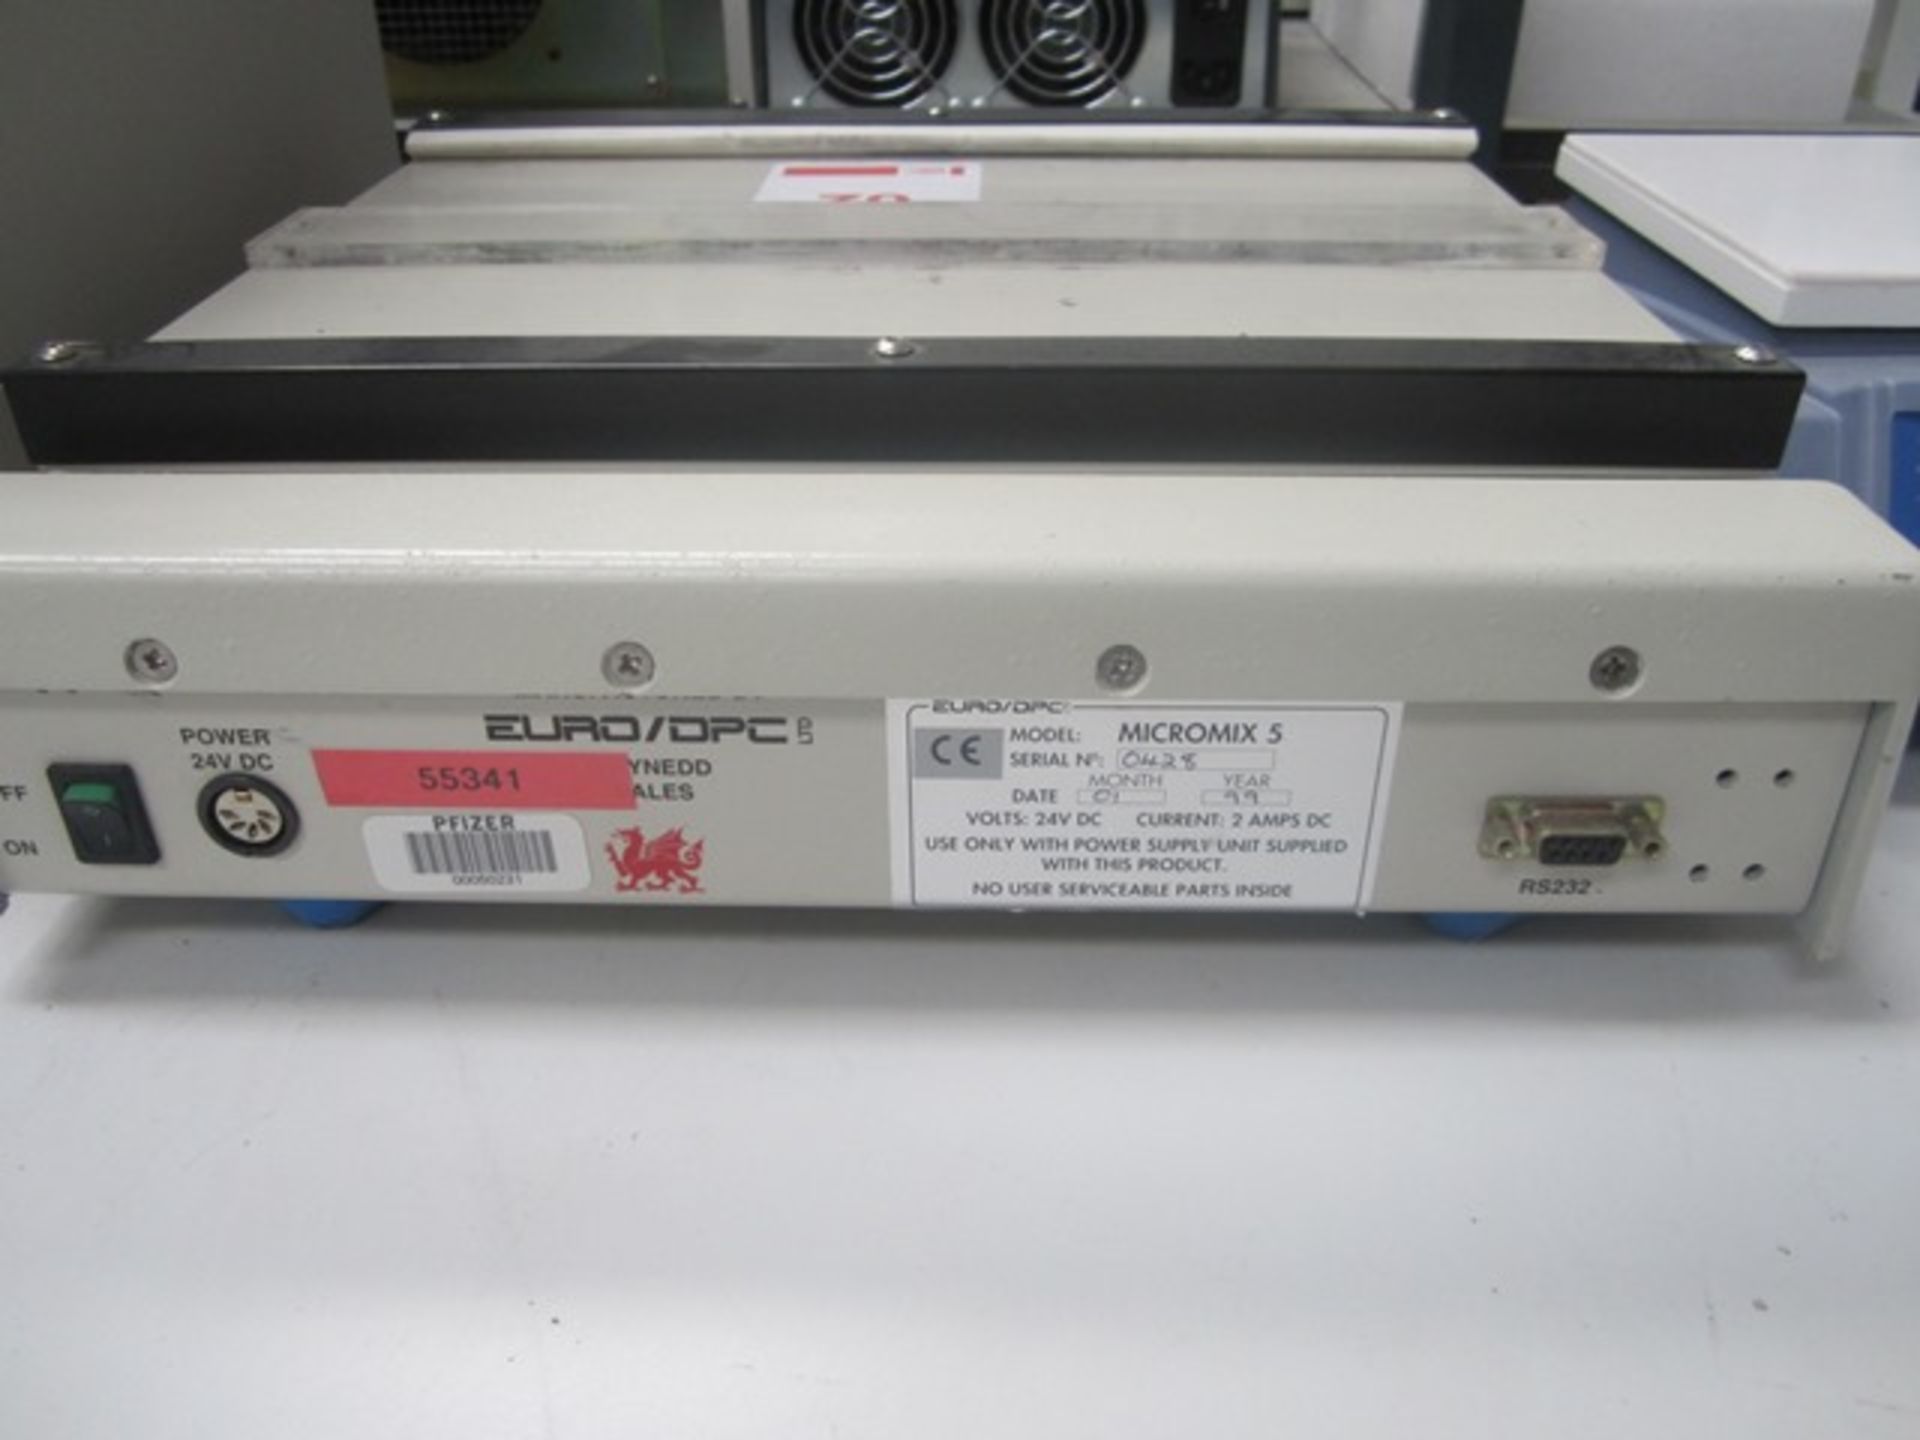 DPC MciroMix 5 bench top mixer, serial number 0428 - Image 3 of 3